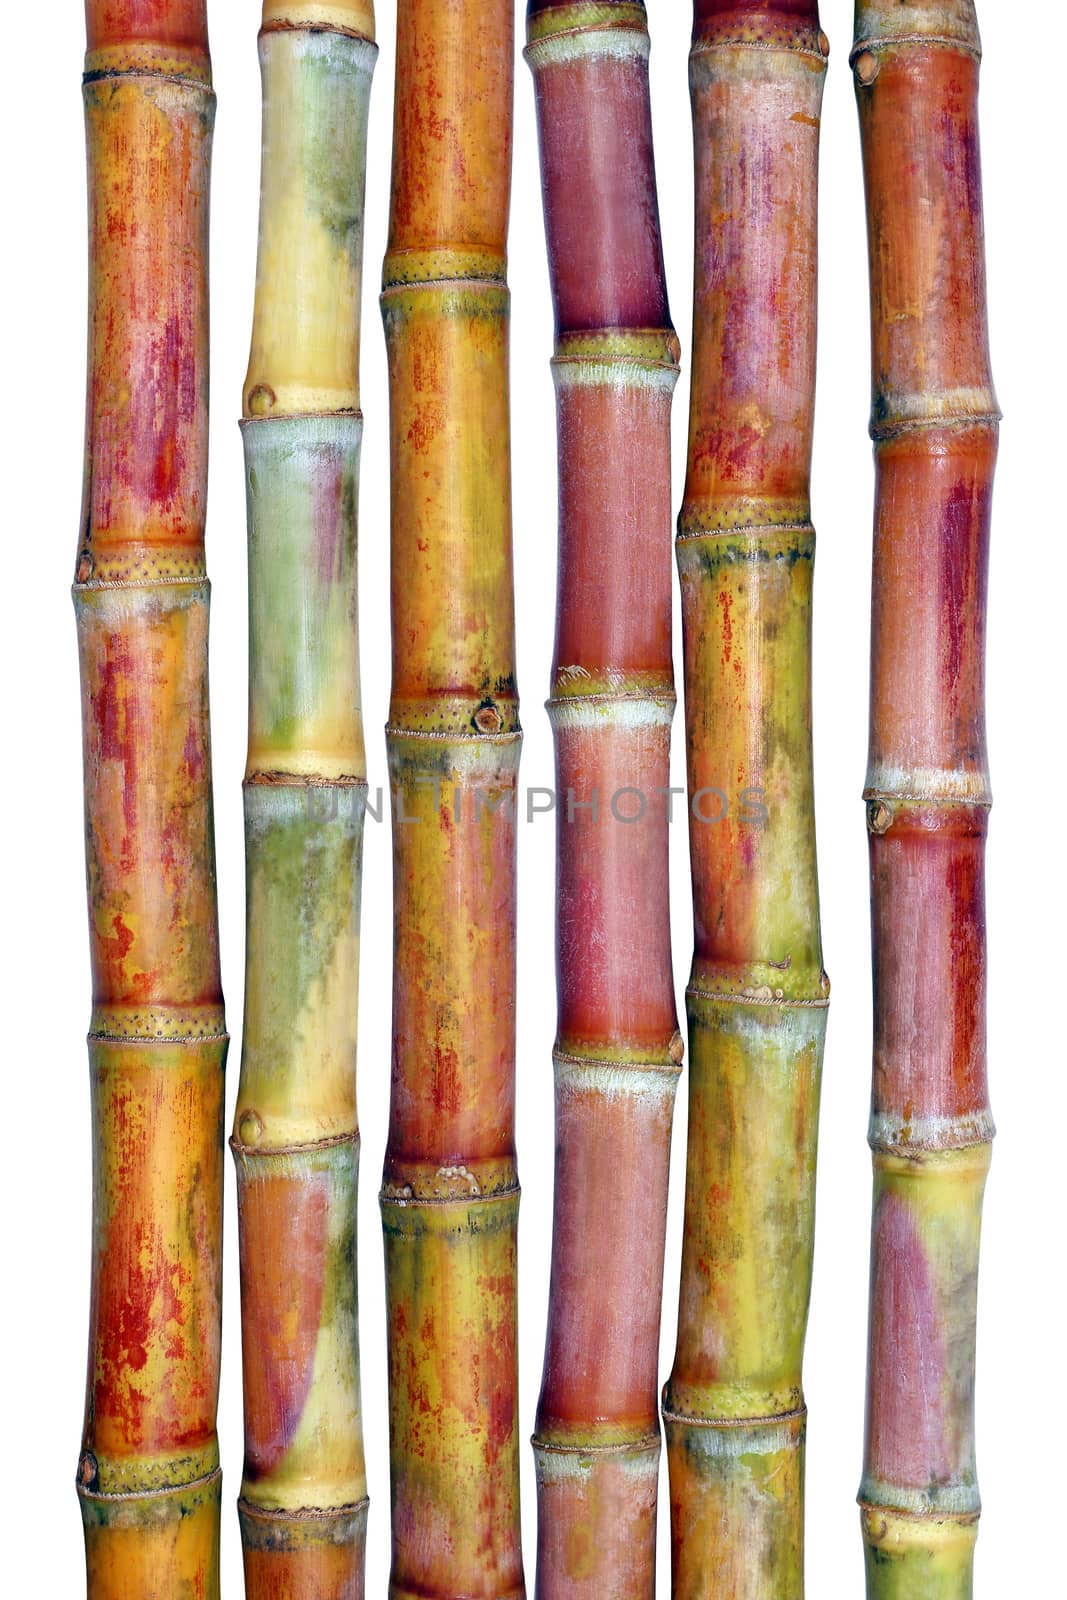 Sugarcane fresh, Cane, Sugarcane fresh on white background, Sugarcane agriculture by cgdeaw